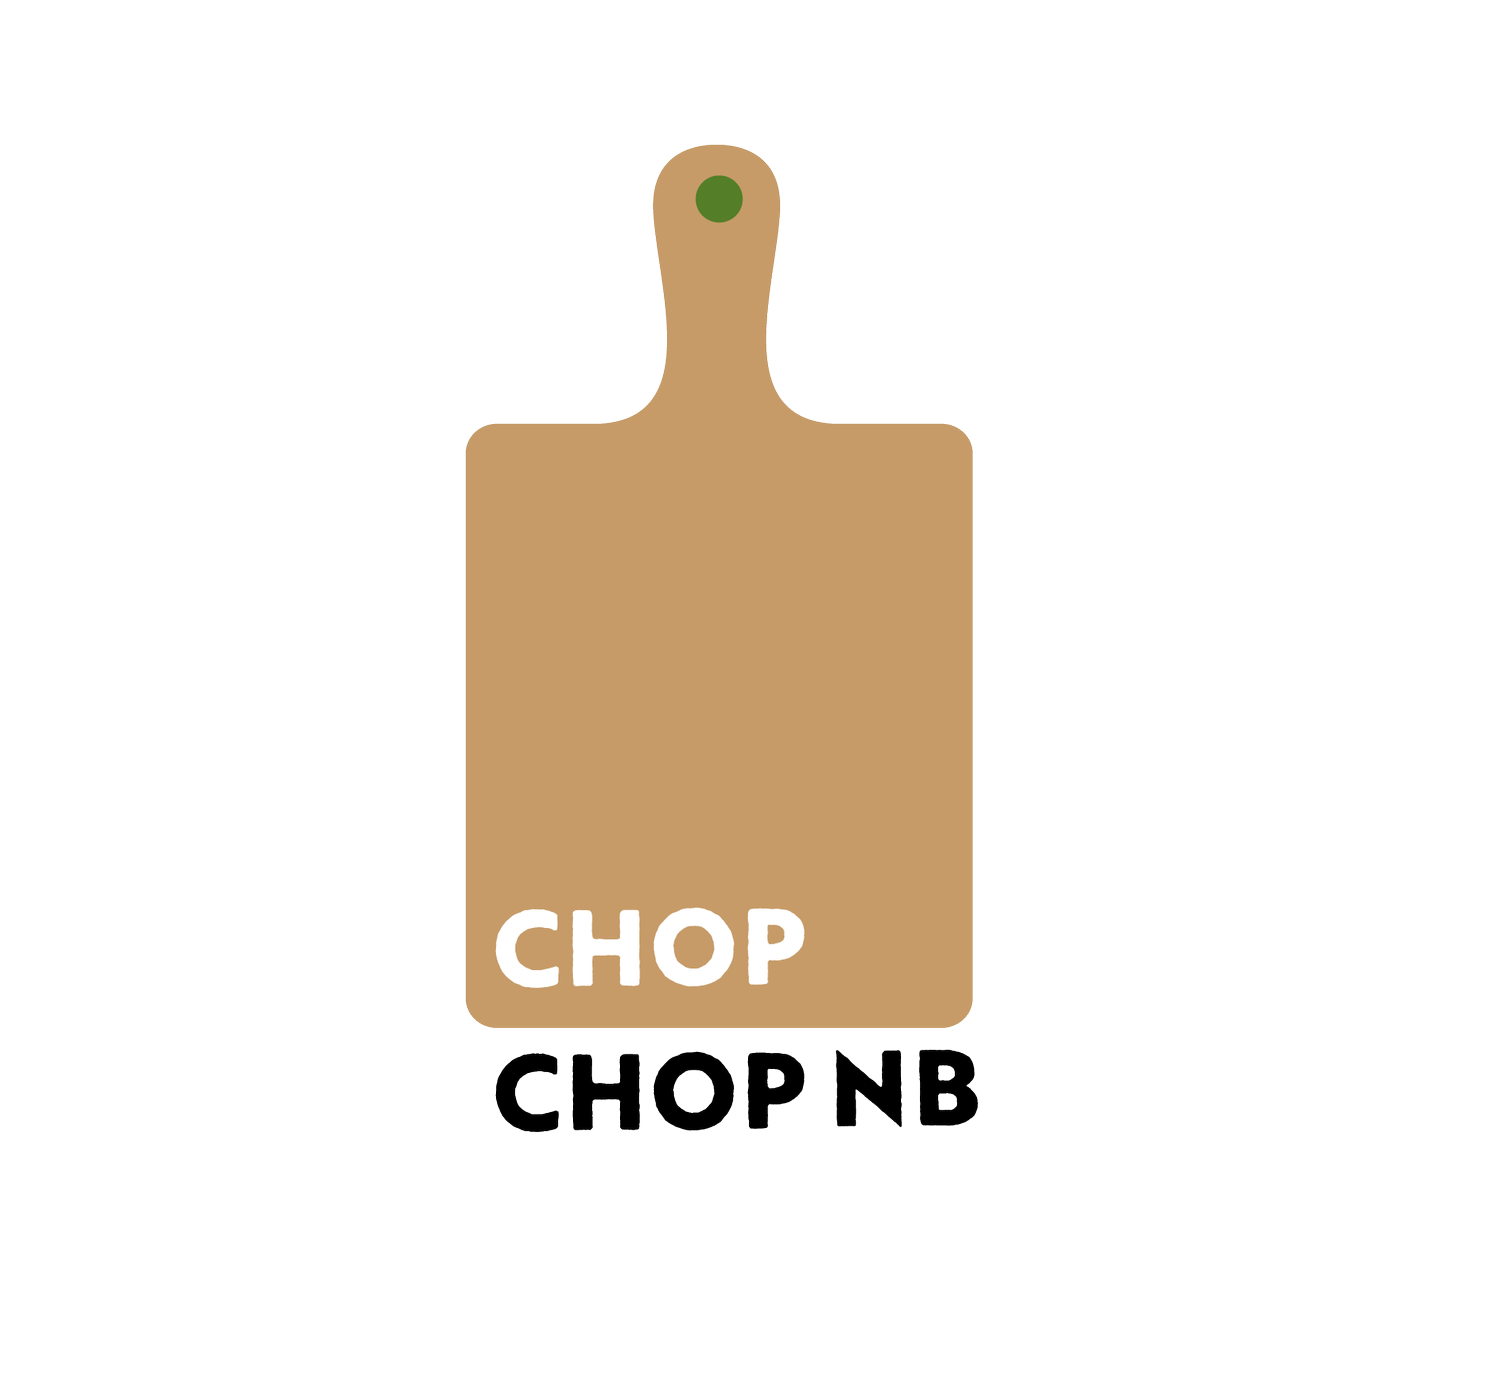 ChopChop NB